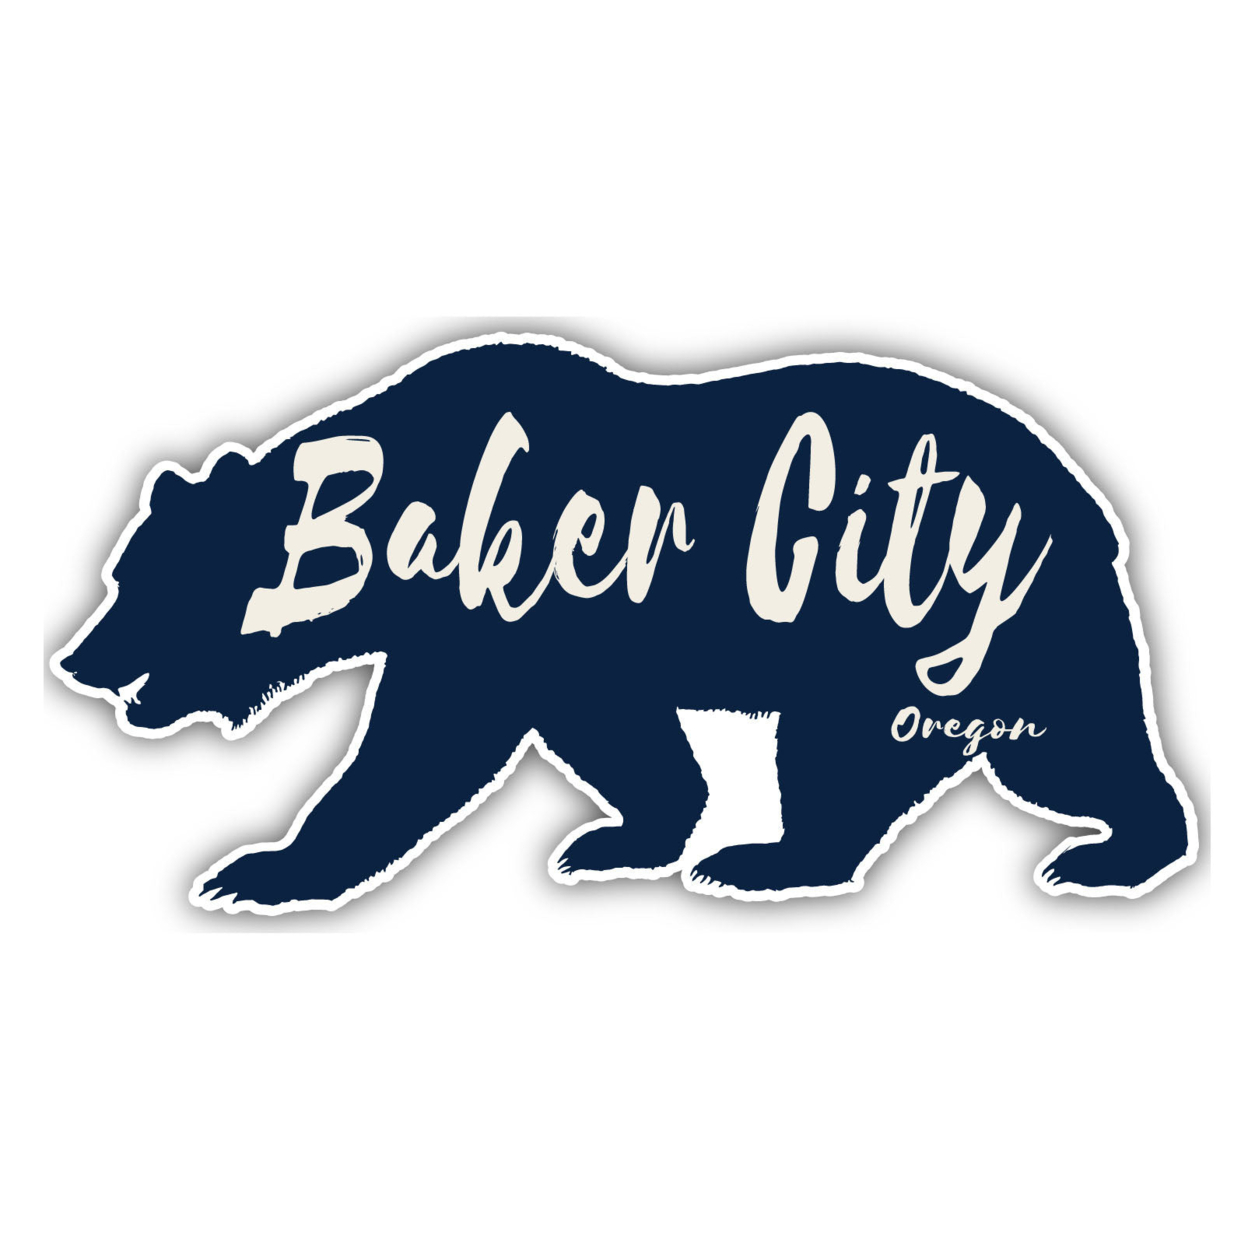 Baker City Oregon Souvenir Decorative Stickers (Choose Theme And Size) - Single Unit, 8-Inch, Tent